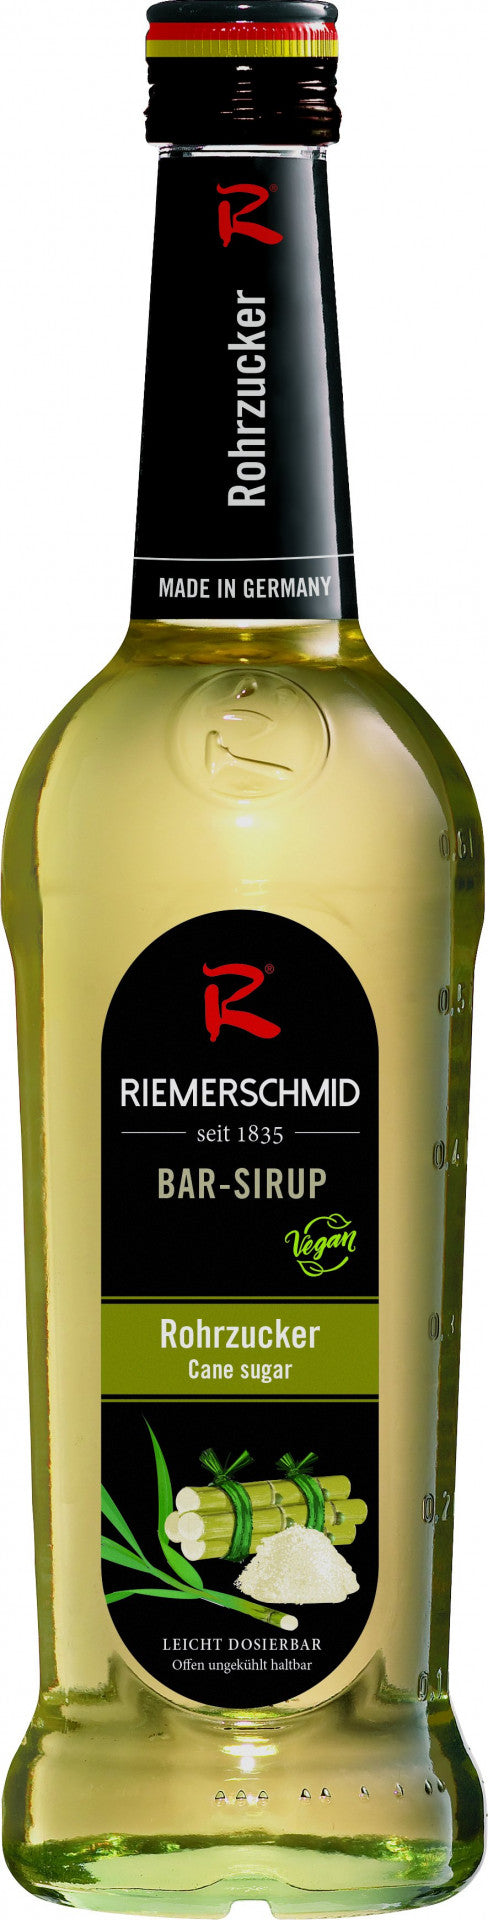 Riemerschmid Bar-Sirup Rohrzucker 0,7L